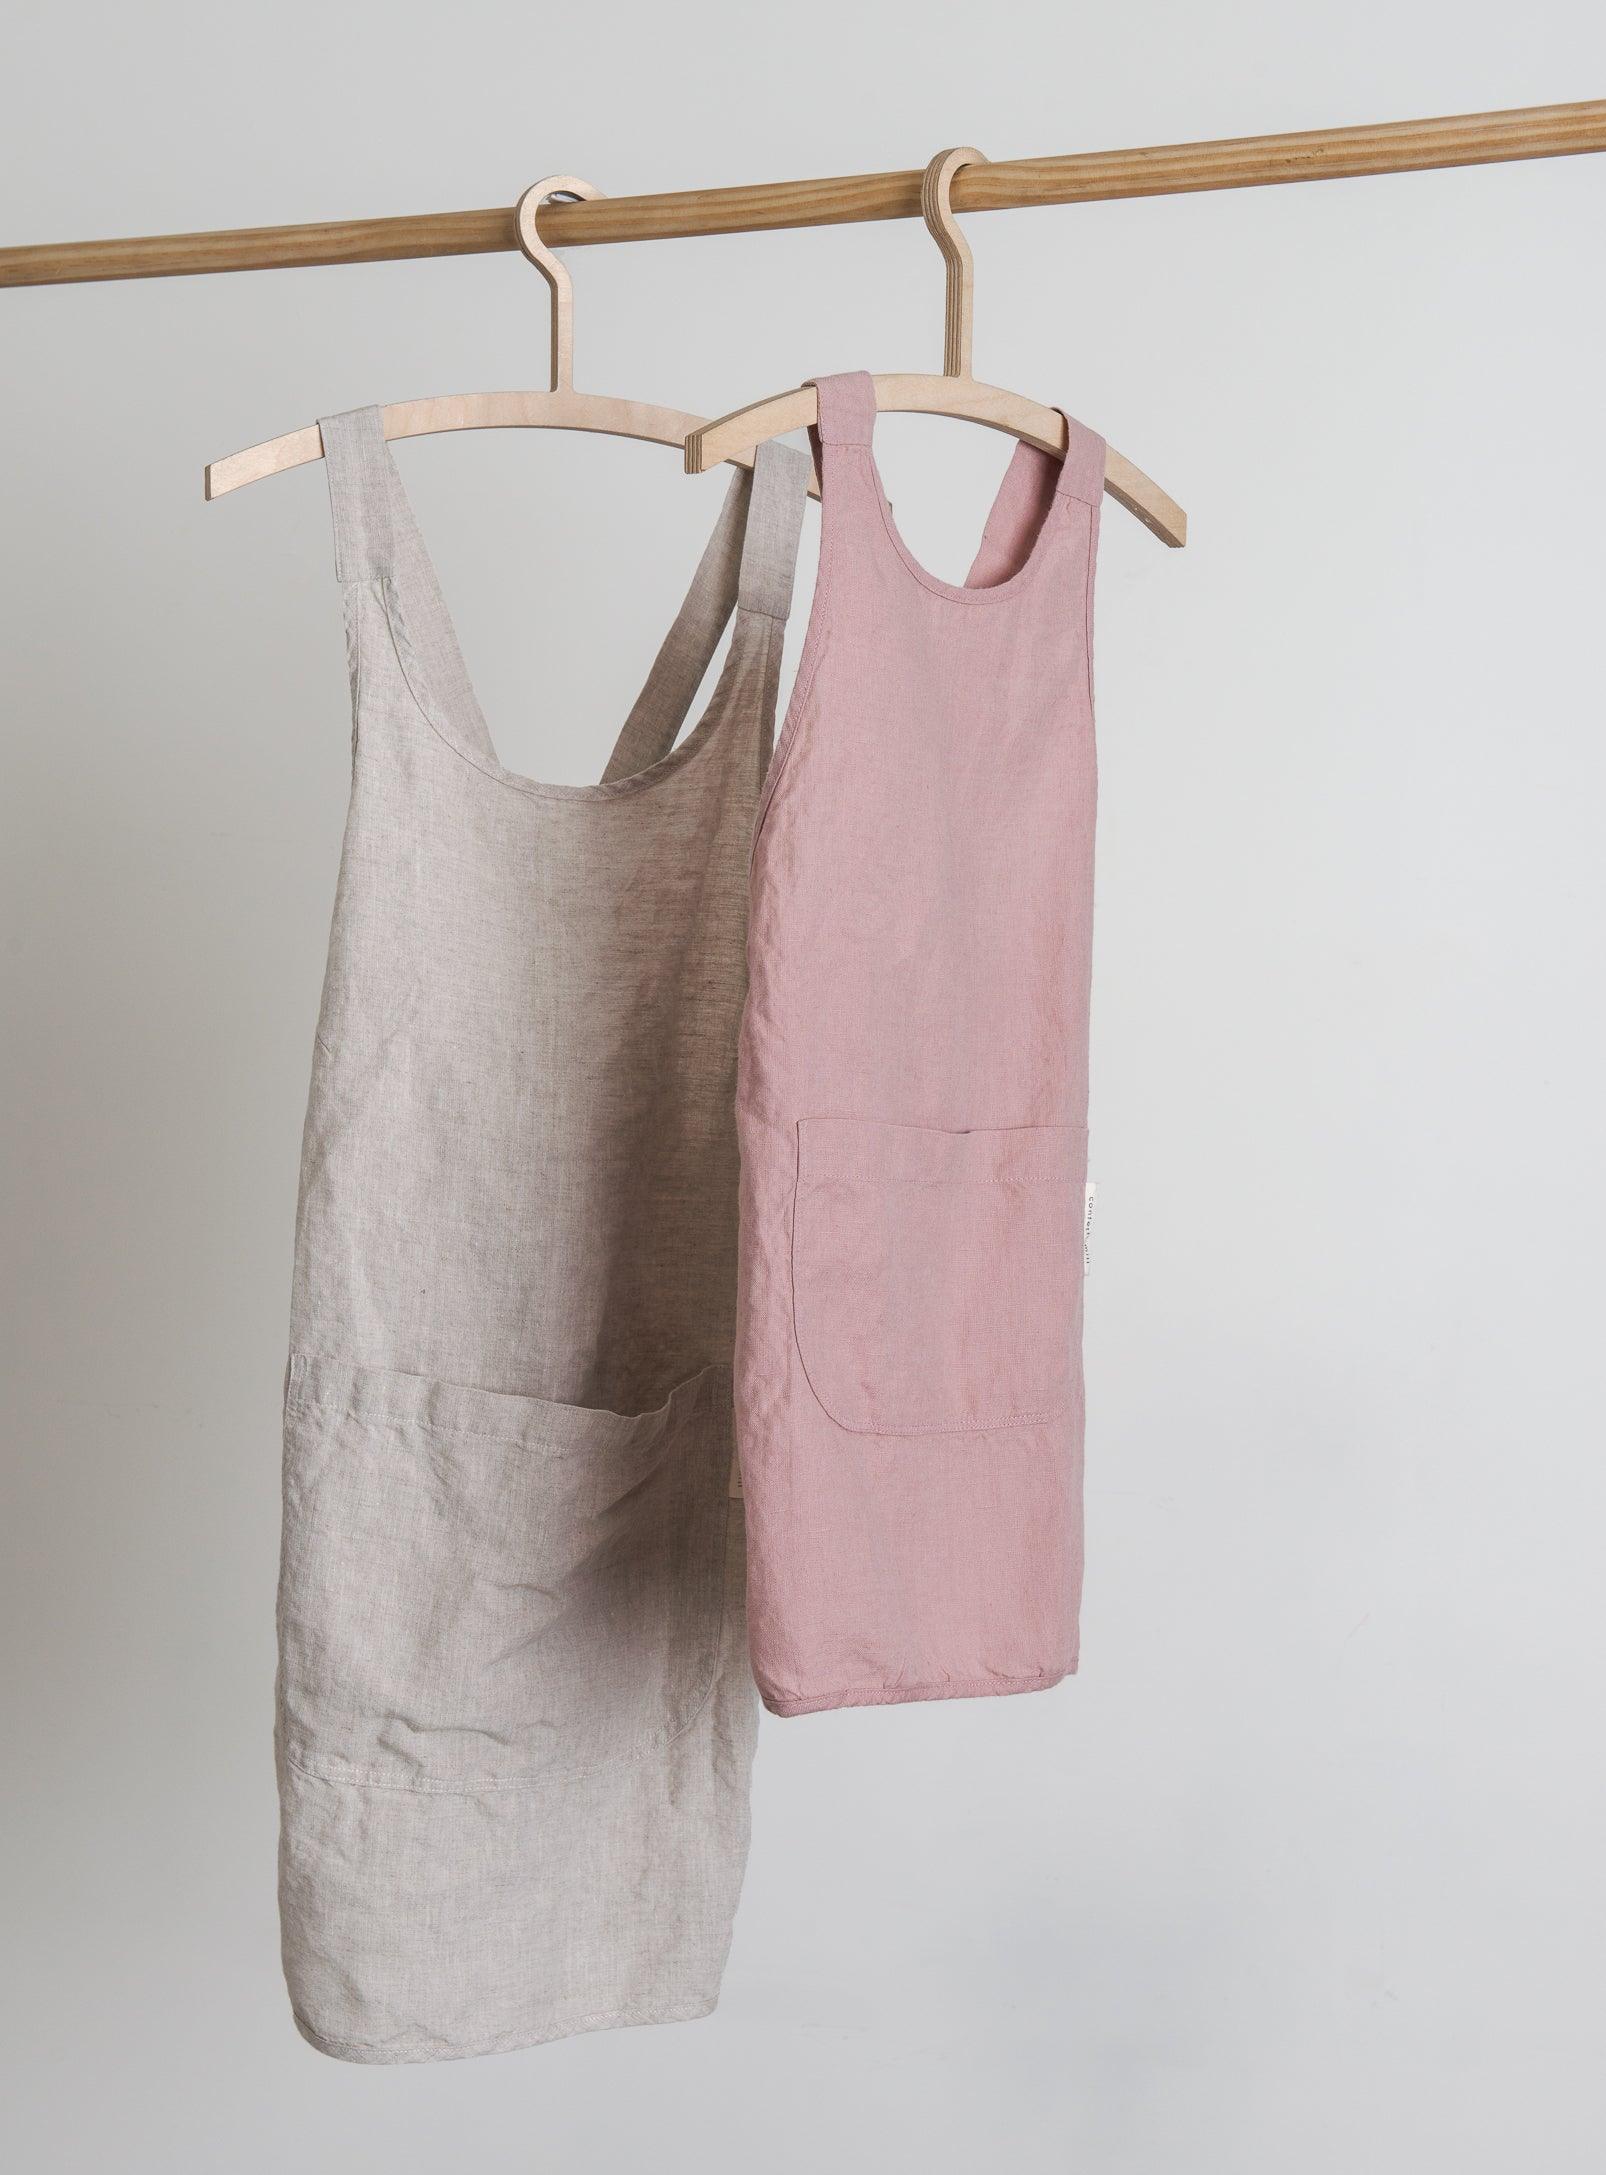 Linen Kids Apron - Dusty-pink - Confetti Mill